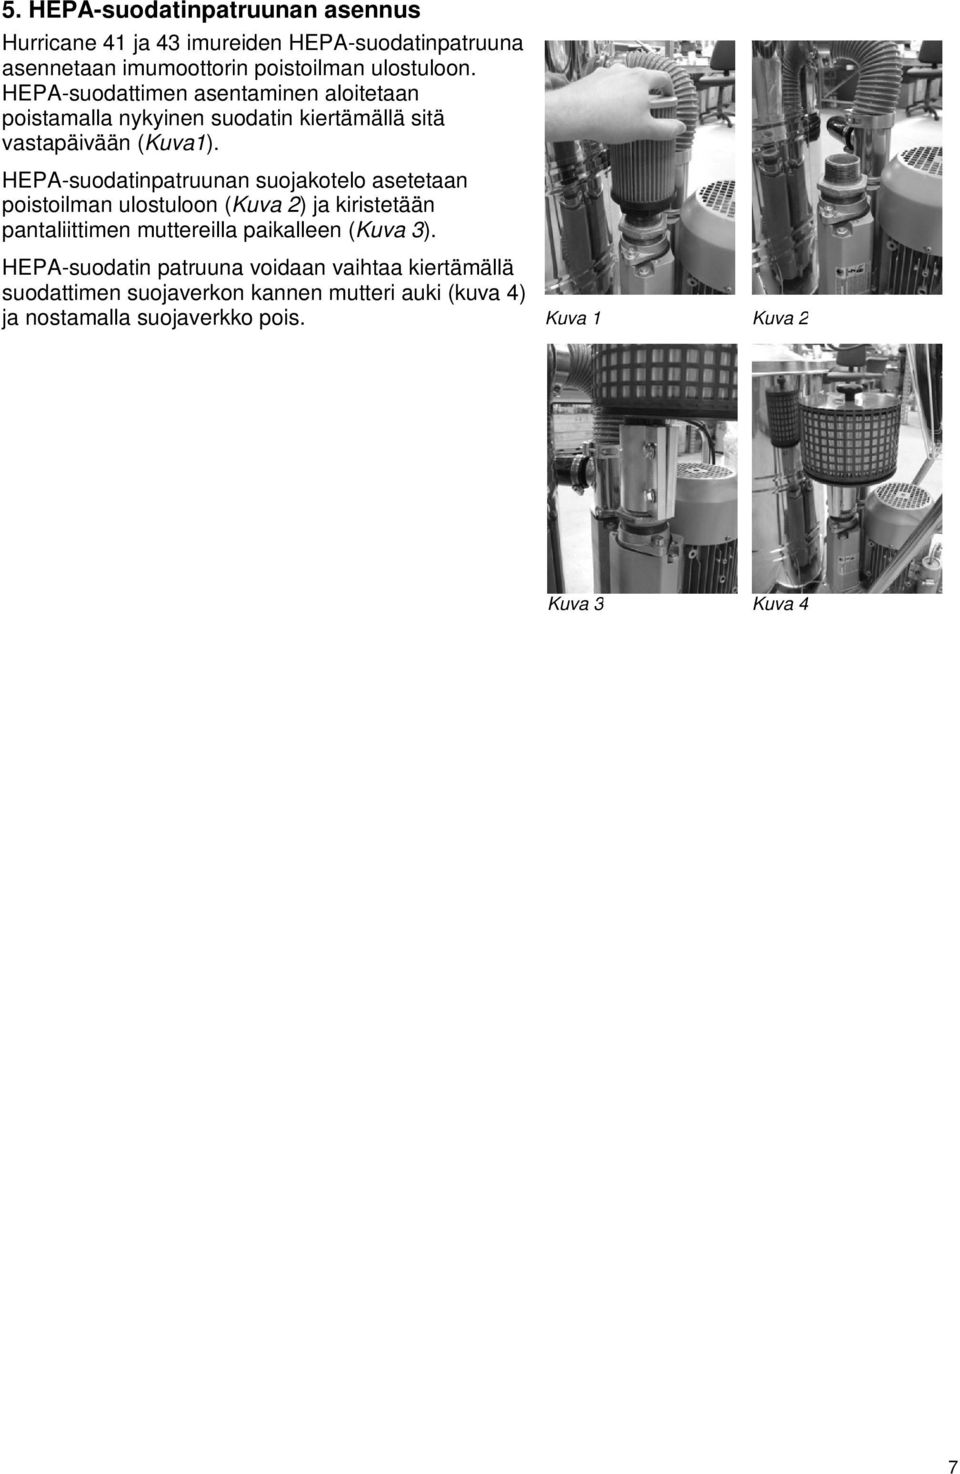 HEPA-suodatinpatruunan suojakotelo asetetaan poistoilman ulostuloon (Kuva 2) ja kiristetään pantaliittimen muttereilla paikalleen (Kuva